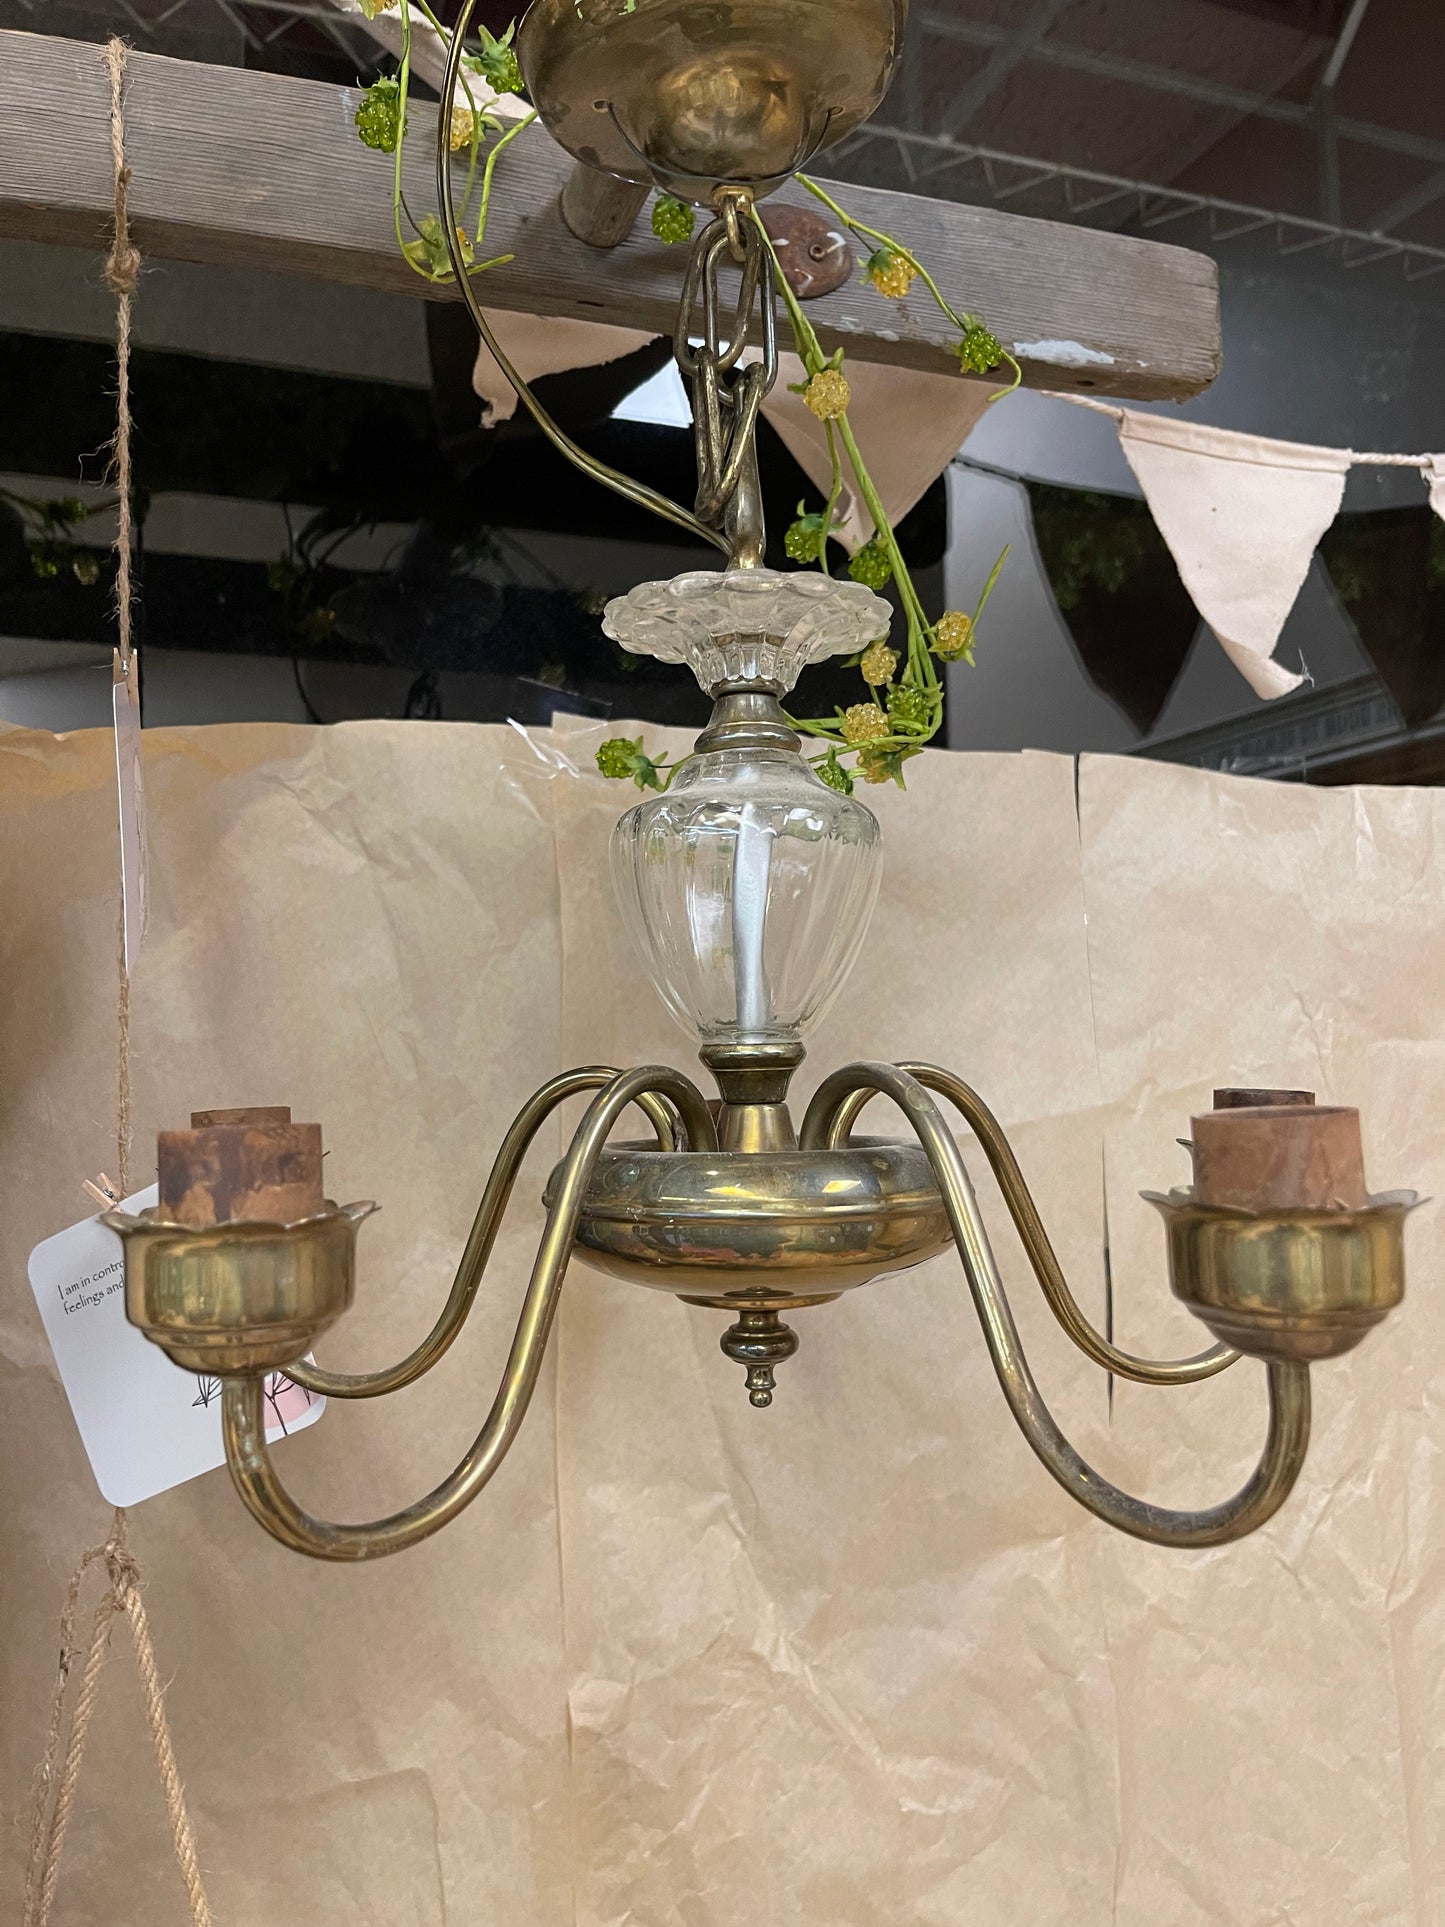 Vintage brass chandelier